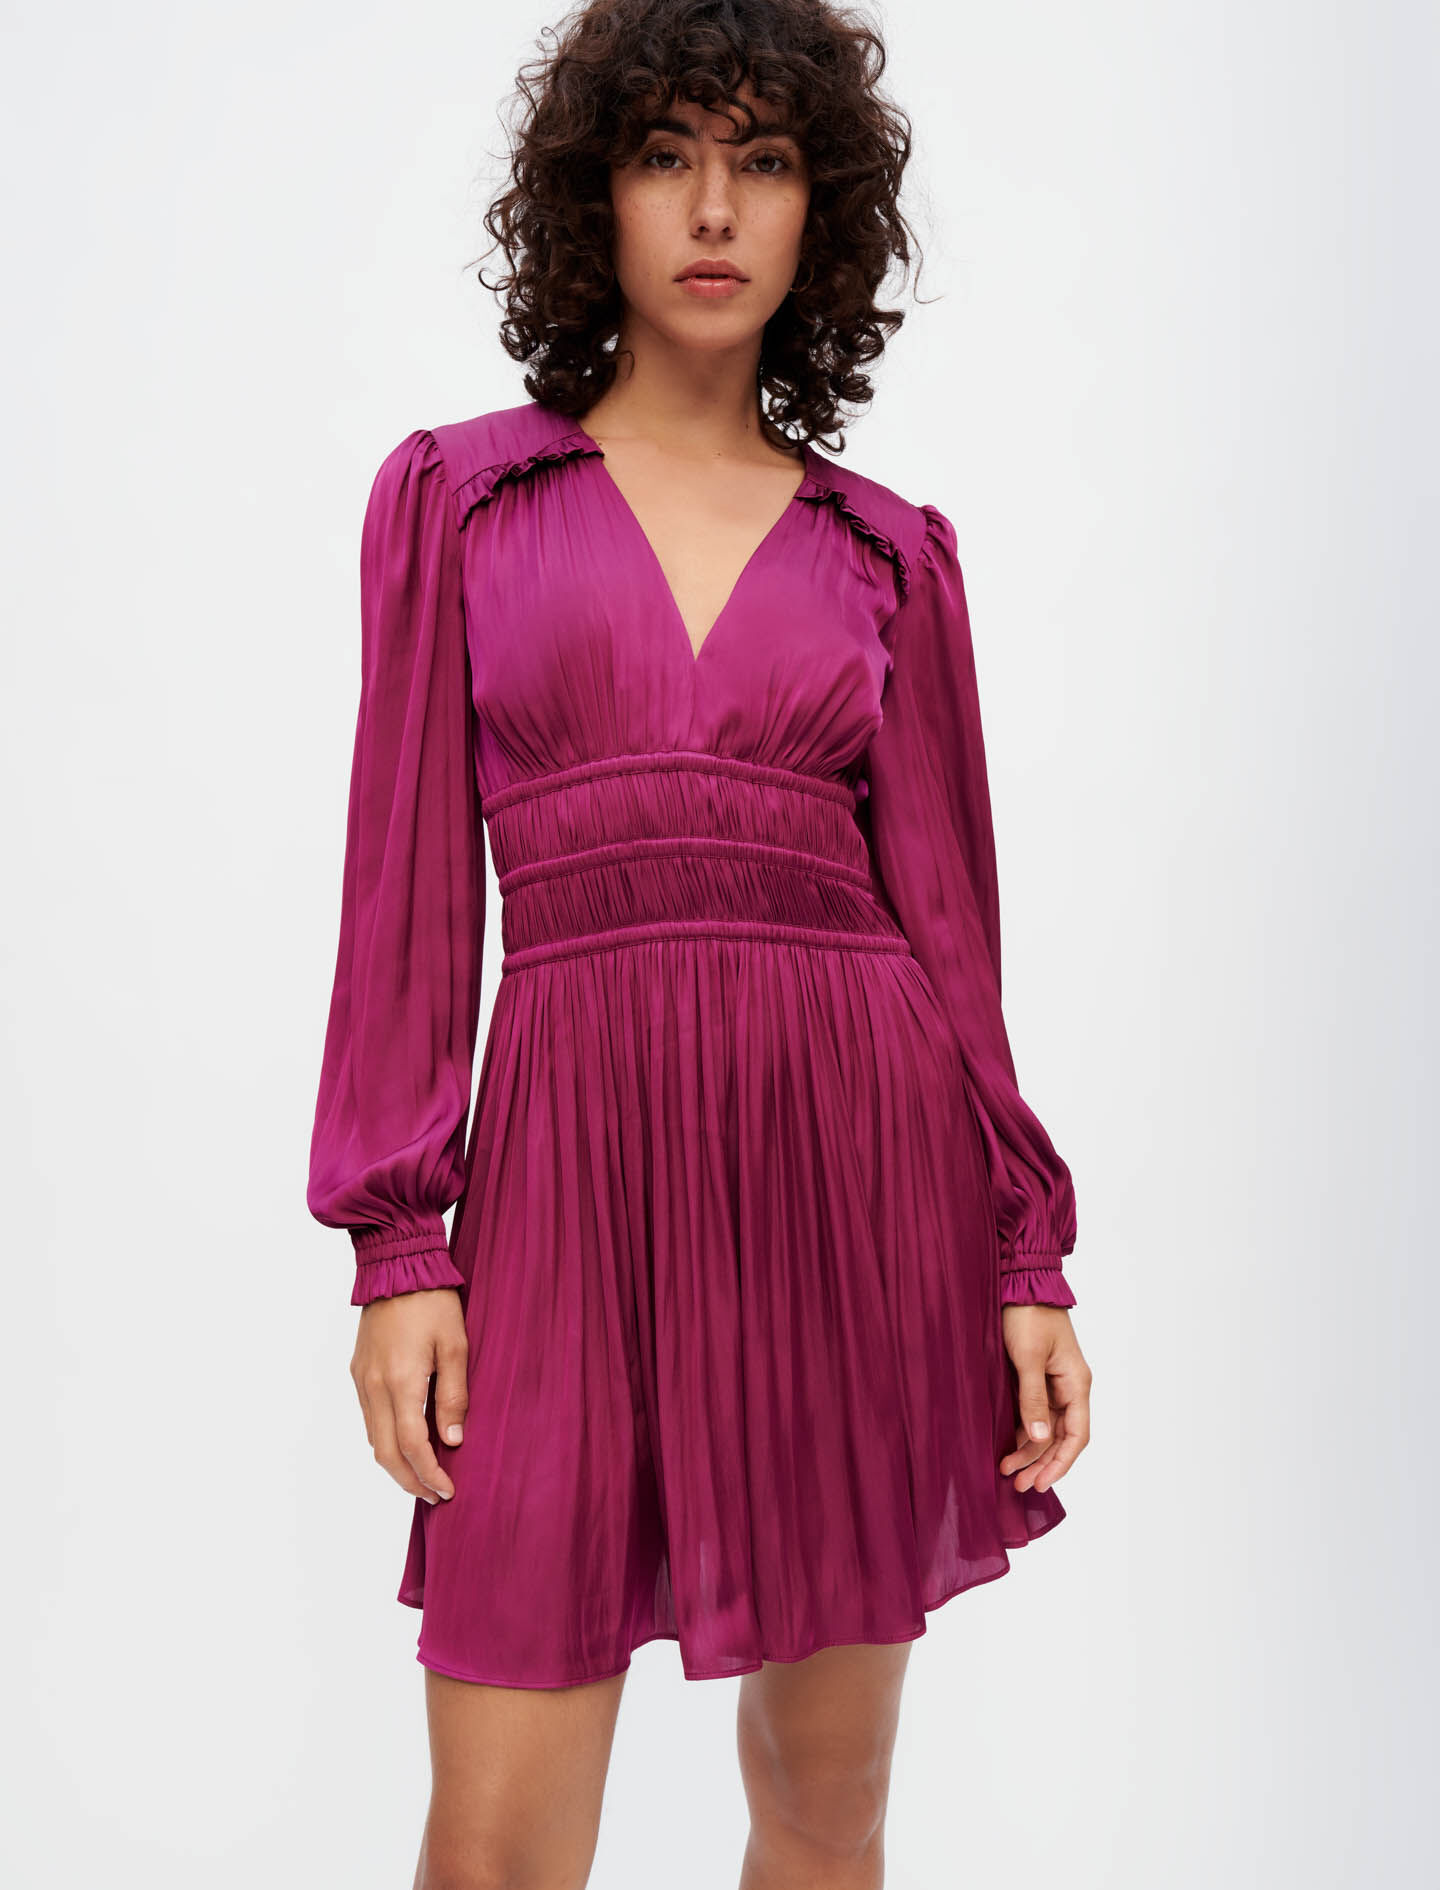 Dresses - Women Clothing | Maje.com